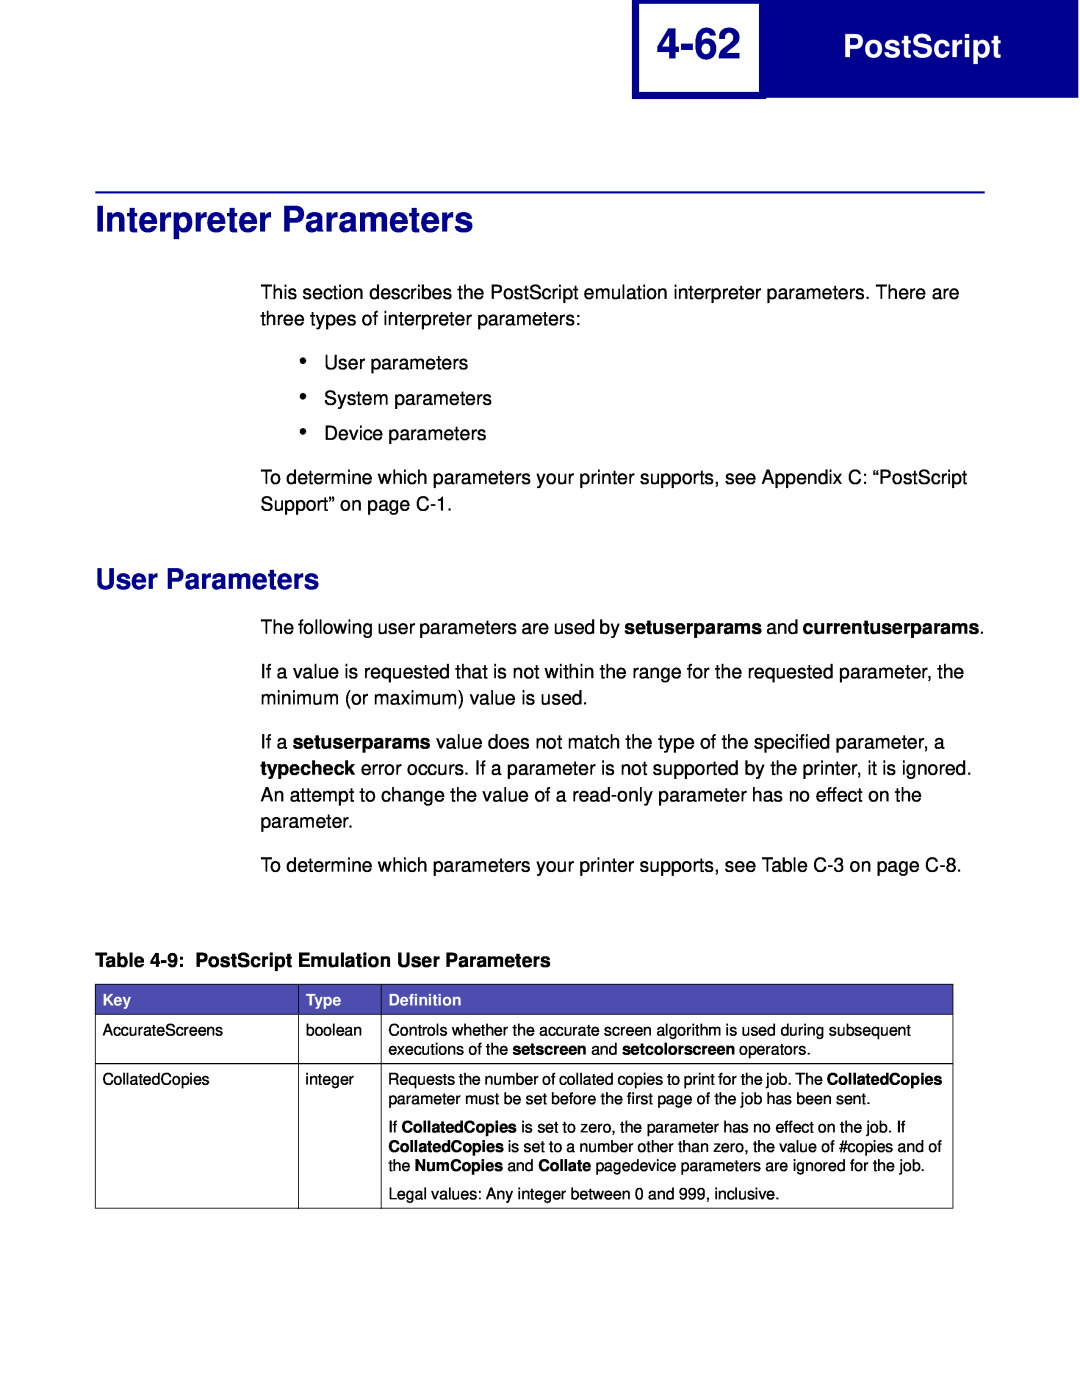 Lexmark C762, C760 manual 4-62, Interpreter Parameters, 9 PostScript Emulation User Parameters 